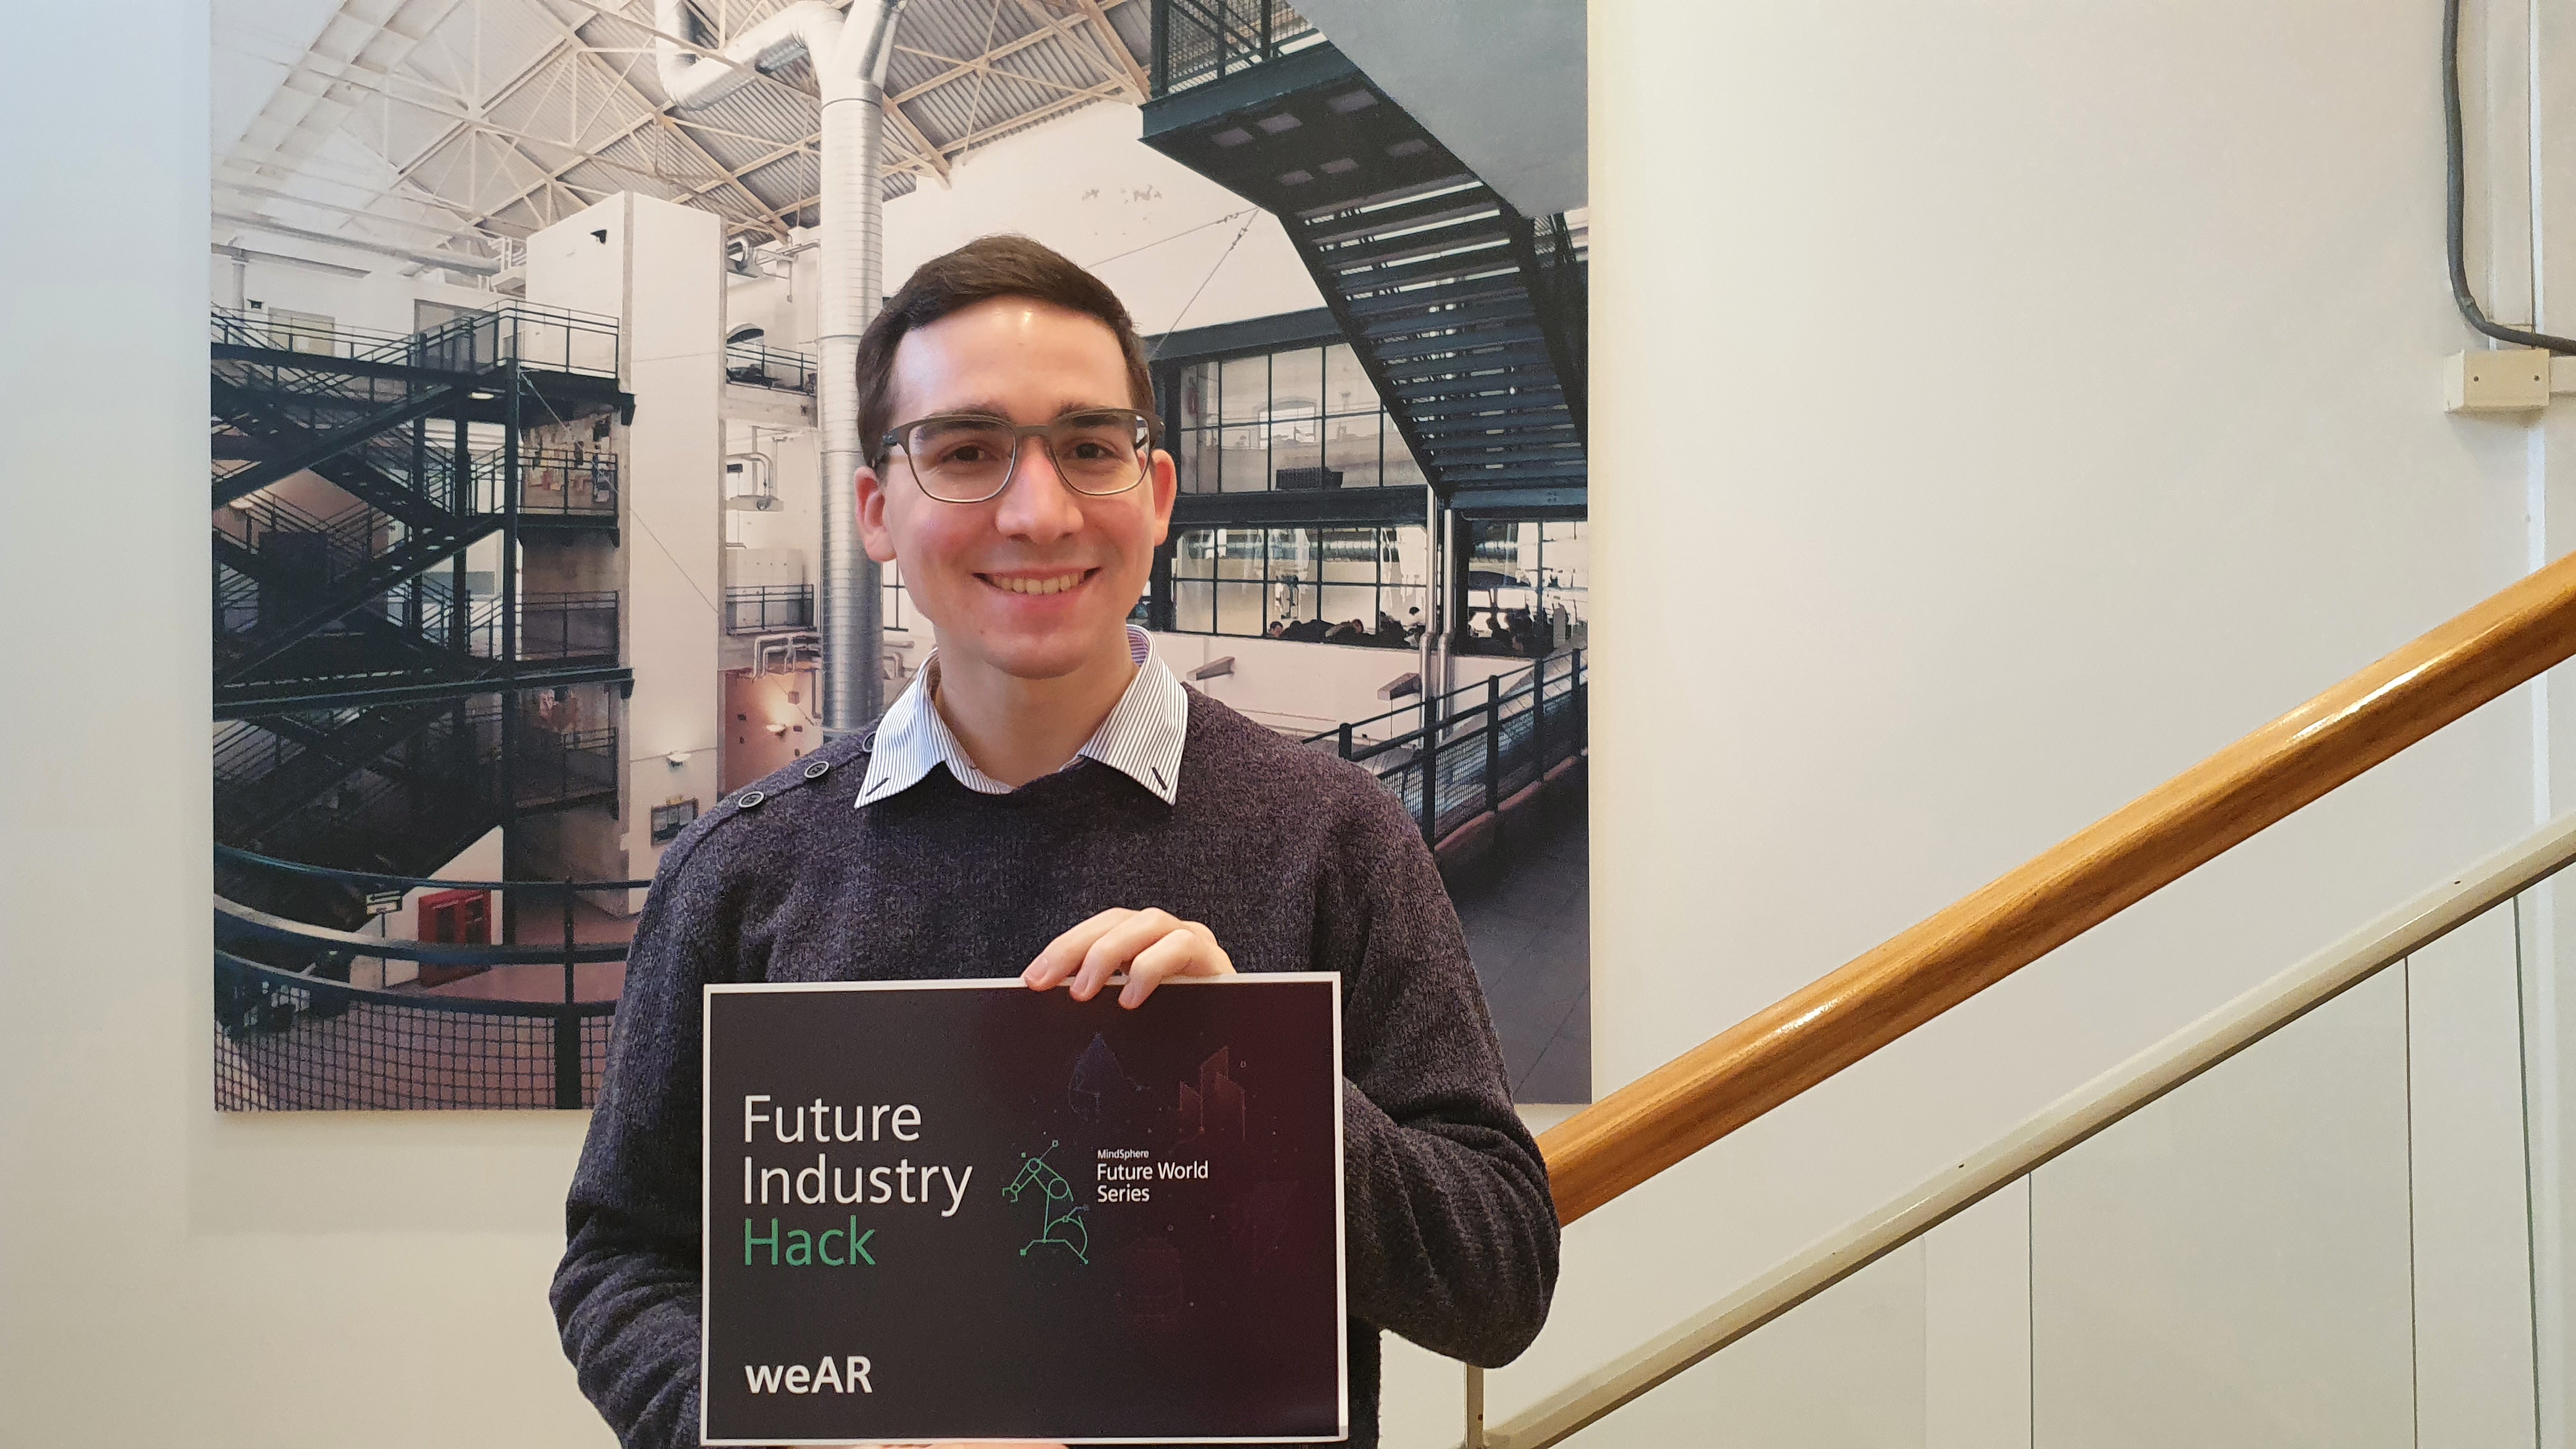 Giovanni Turri, laureato in Ingegneria elettronica per l’ICT al DE, vince con weAR S.r.l. la Future Industry Hack di Siemens a Dubai